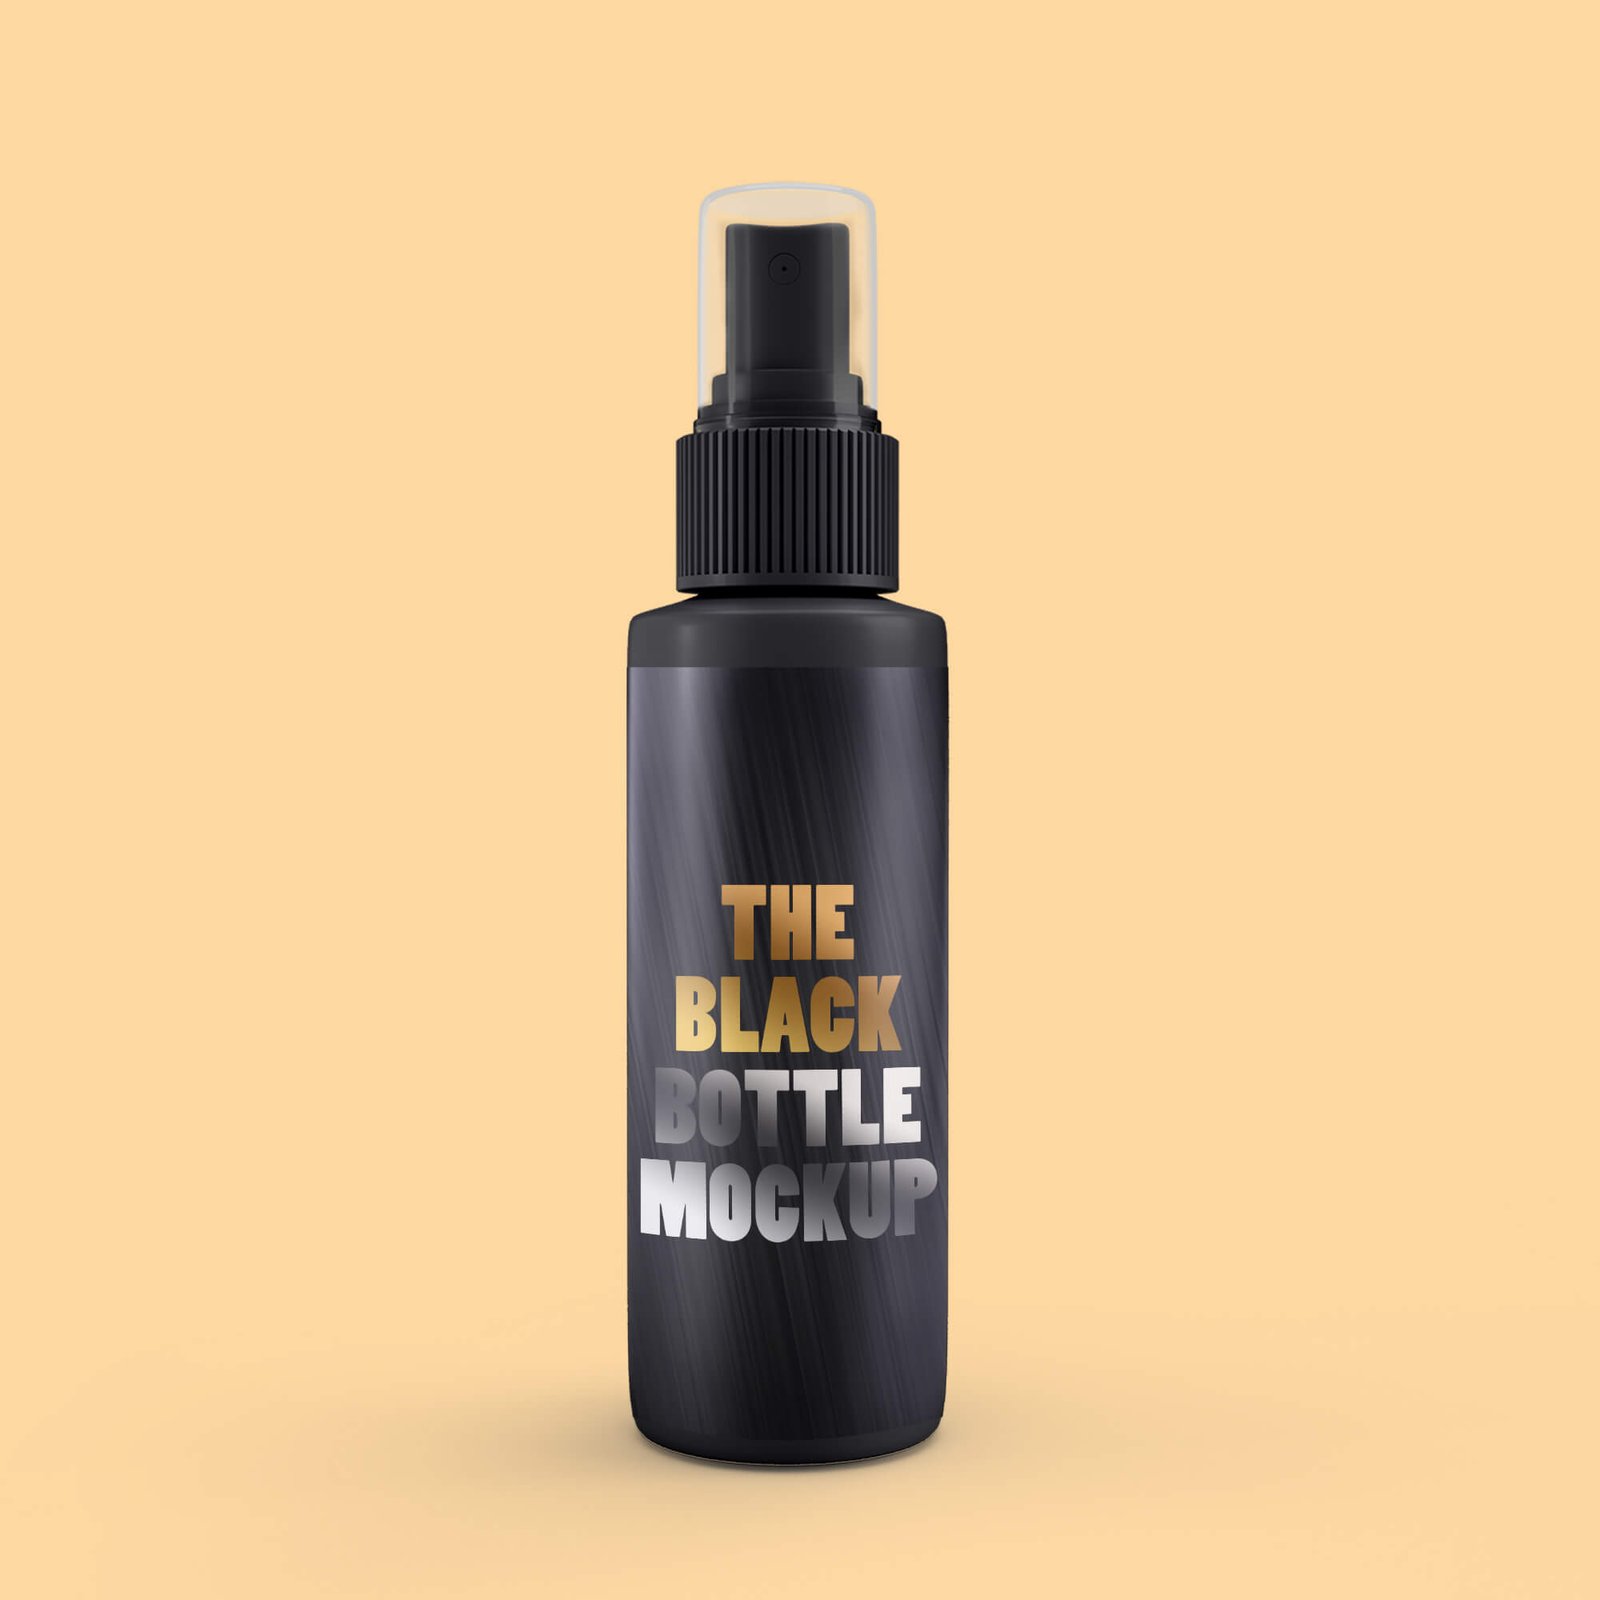 Design Free Black Bottle Mockup PSD Template